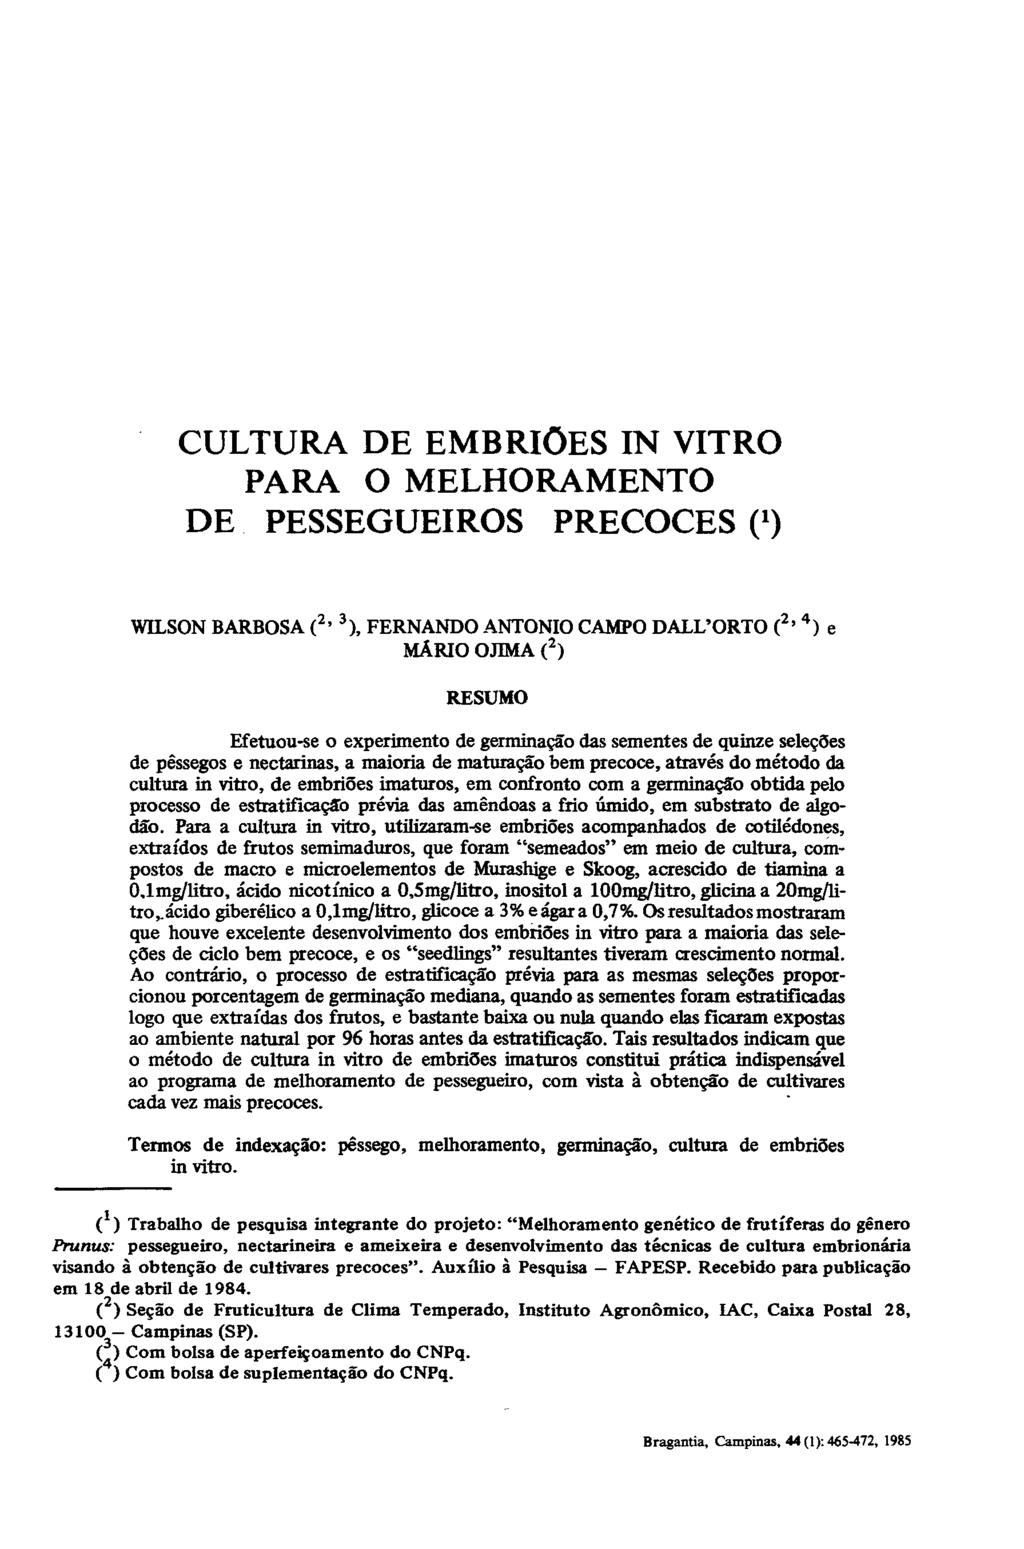 CULTURA DE EMBRIÕES IN VITRO PARA O MELHORAMENTO DE PESSEGUEIROS PRECOCES O WILSON BARBOSA ( 2 ' 3 ), FERNANDO ANTÓNIO CAMPO DALL'ORTO ( 2 ' 4 ) e MÁRIO OJIMA ( 2 ) RESUMO Efetuou-se o experimento de